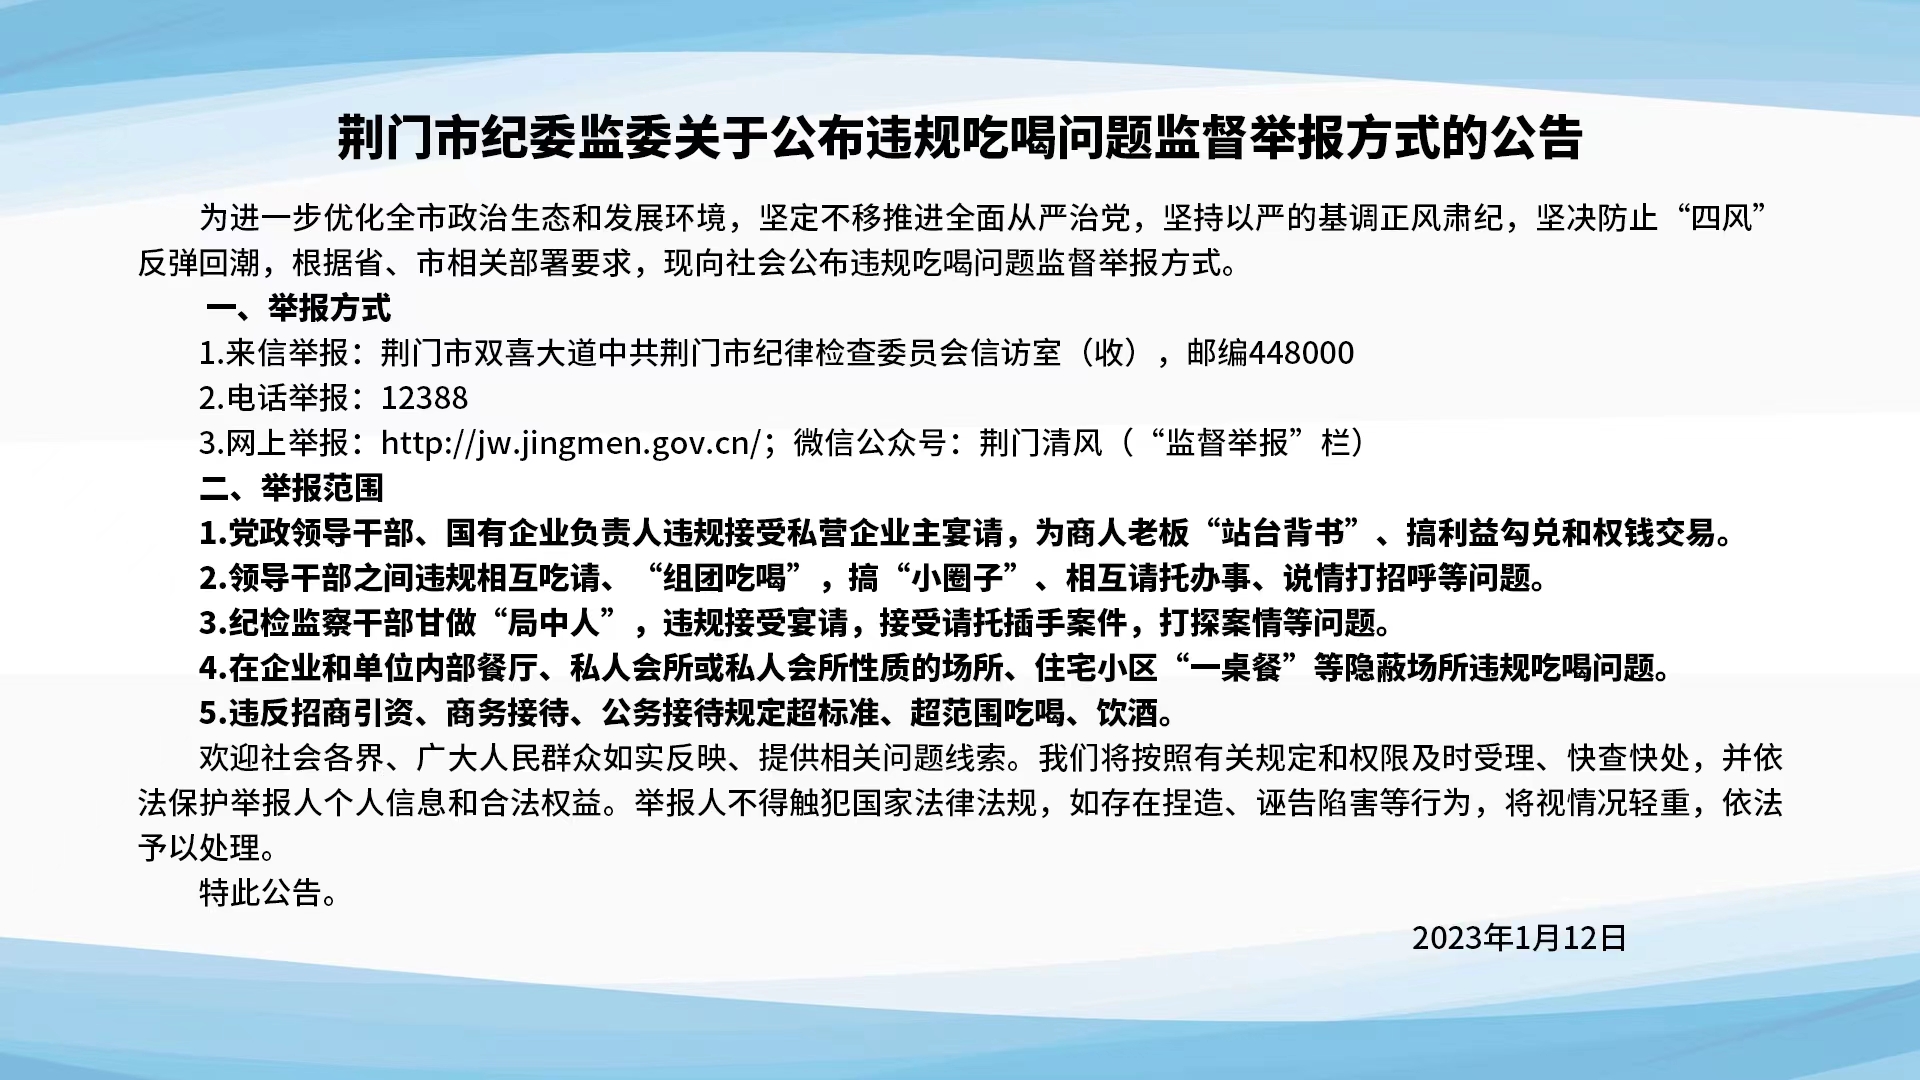 荆门市纪委监委关于公布违规吃喝问题监督举报方式的公告